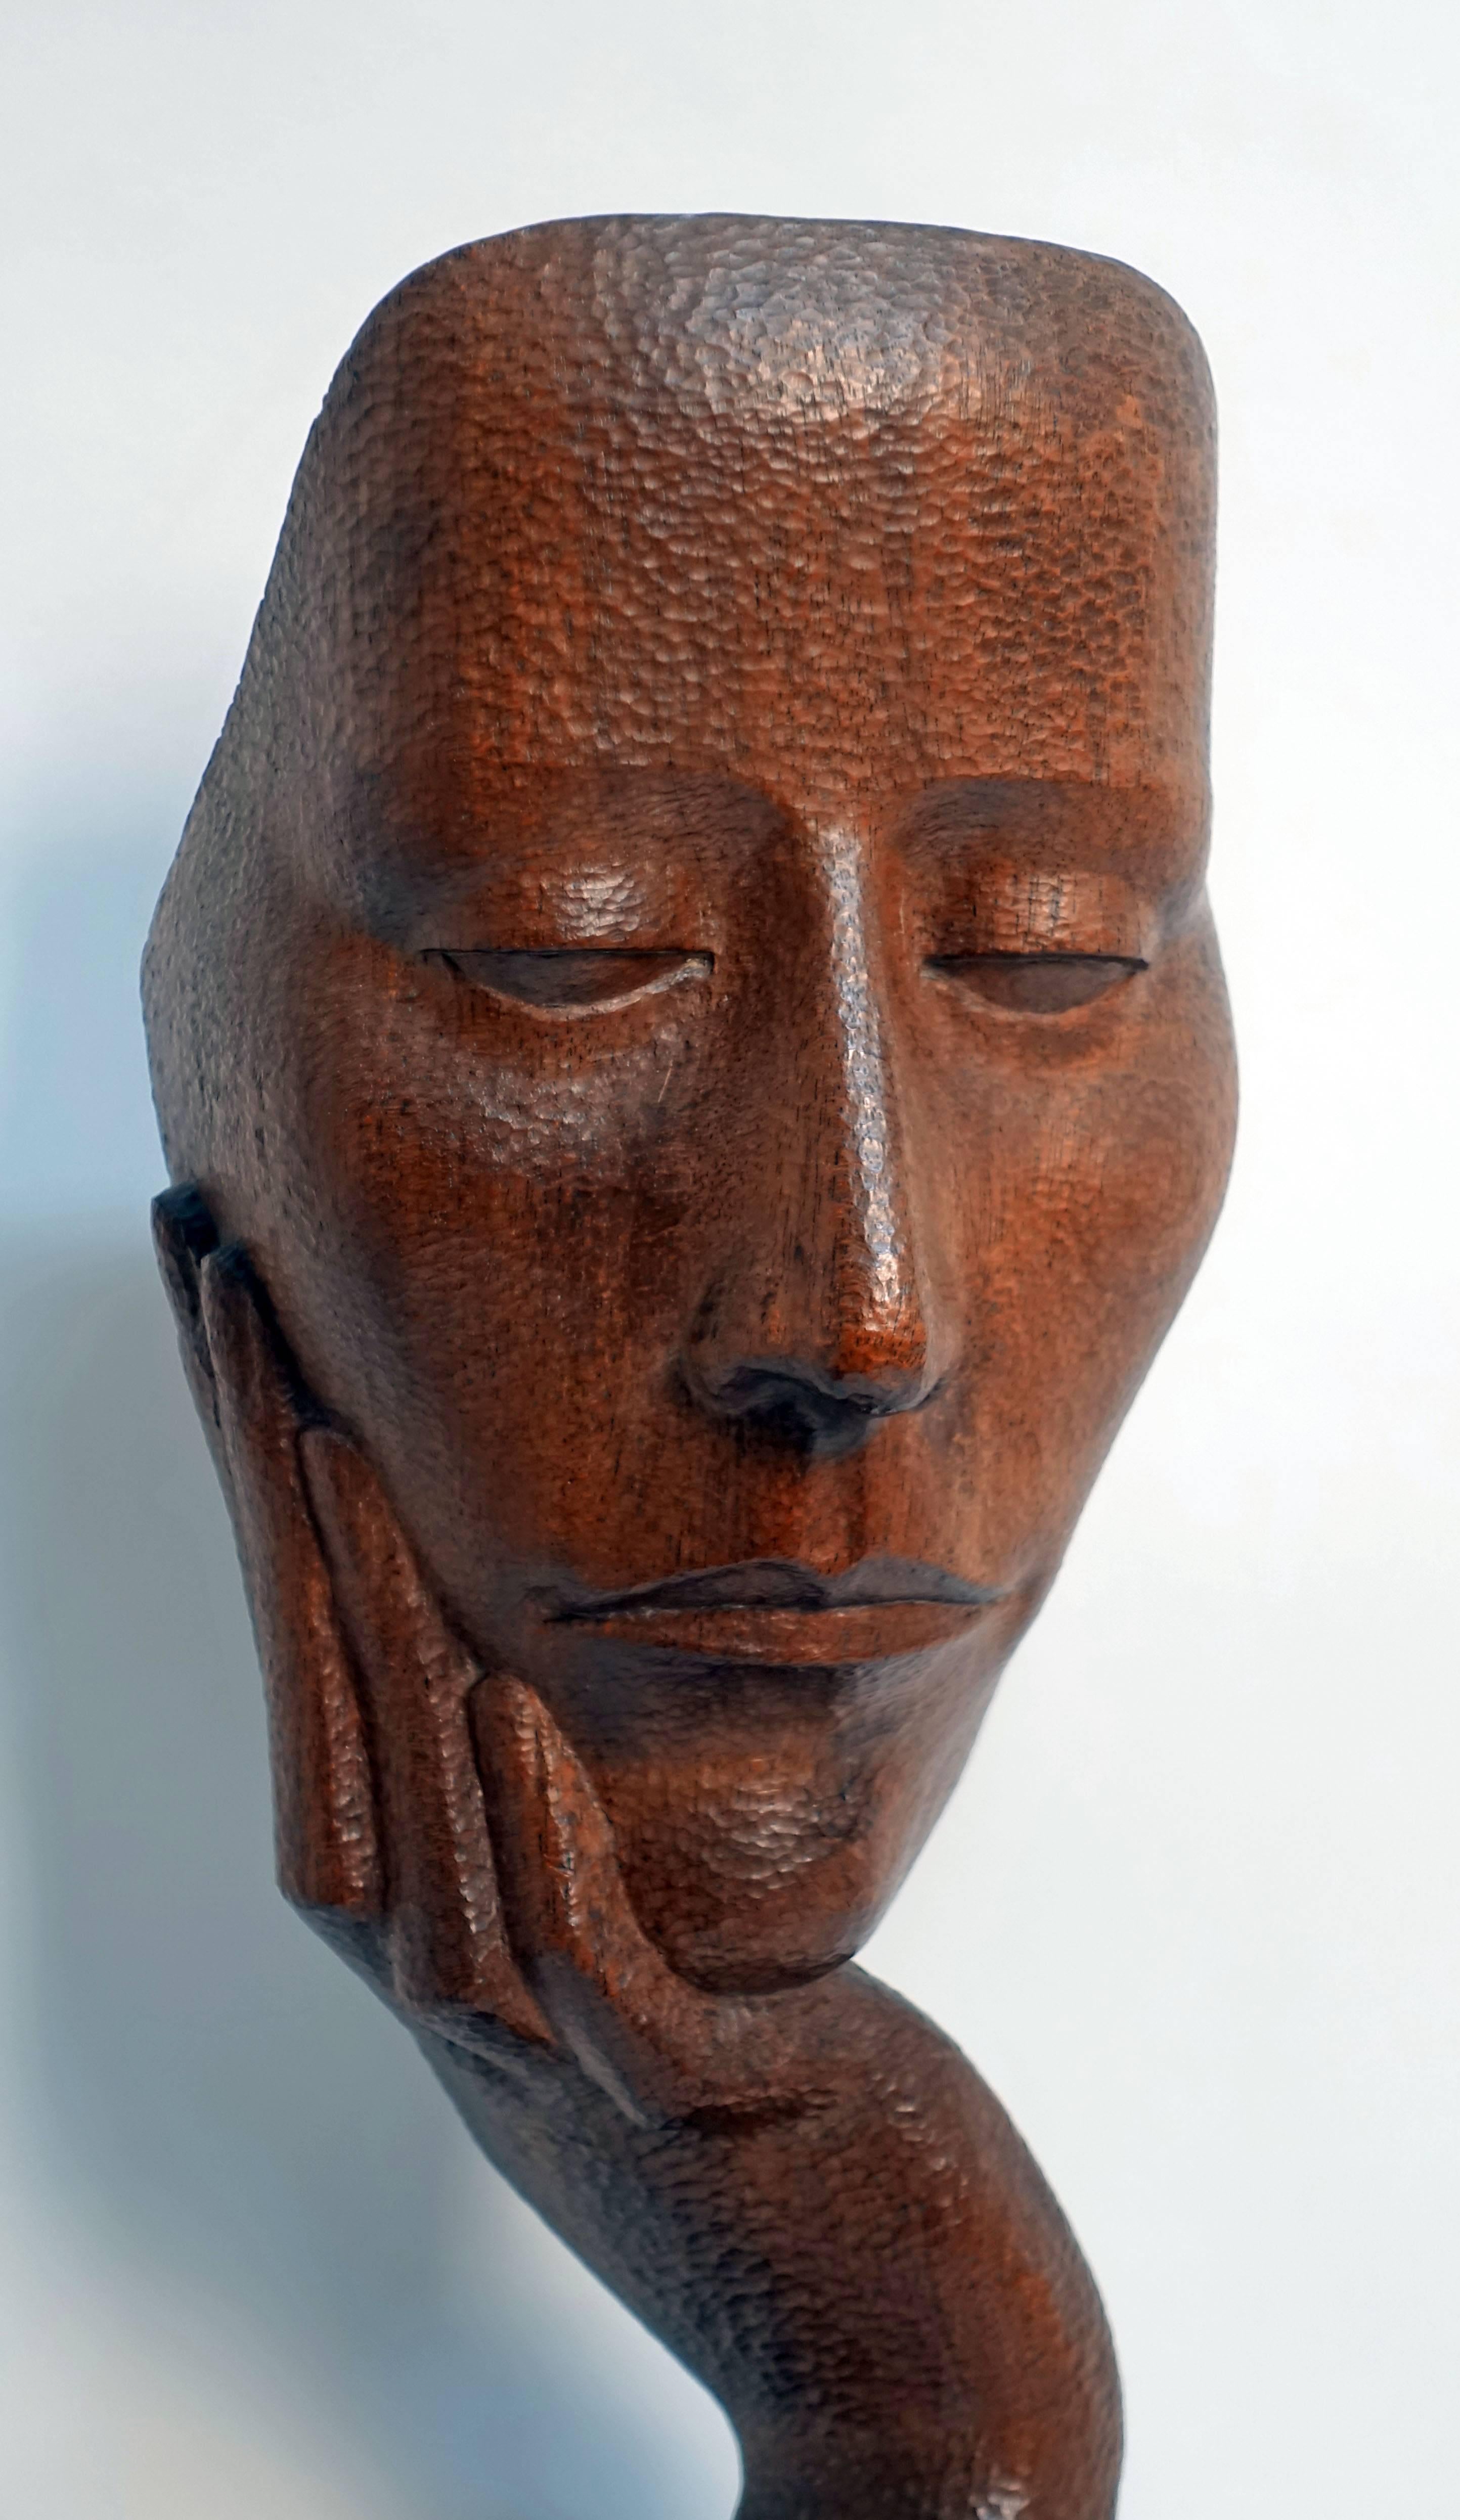 mid century wood sculpture